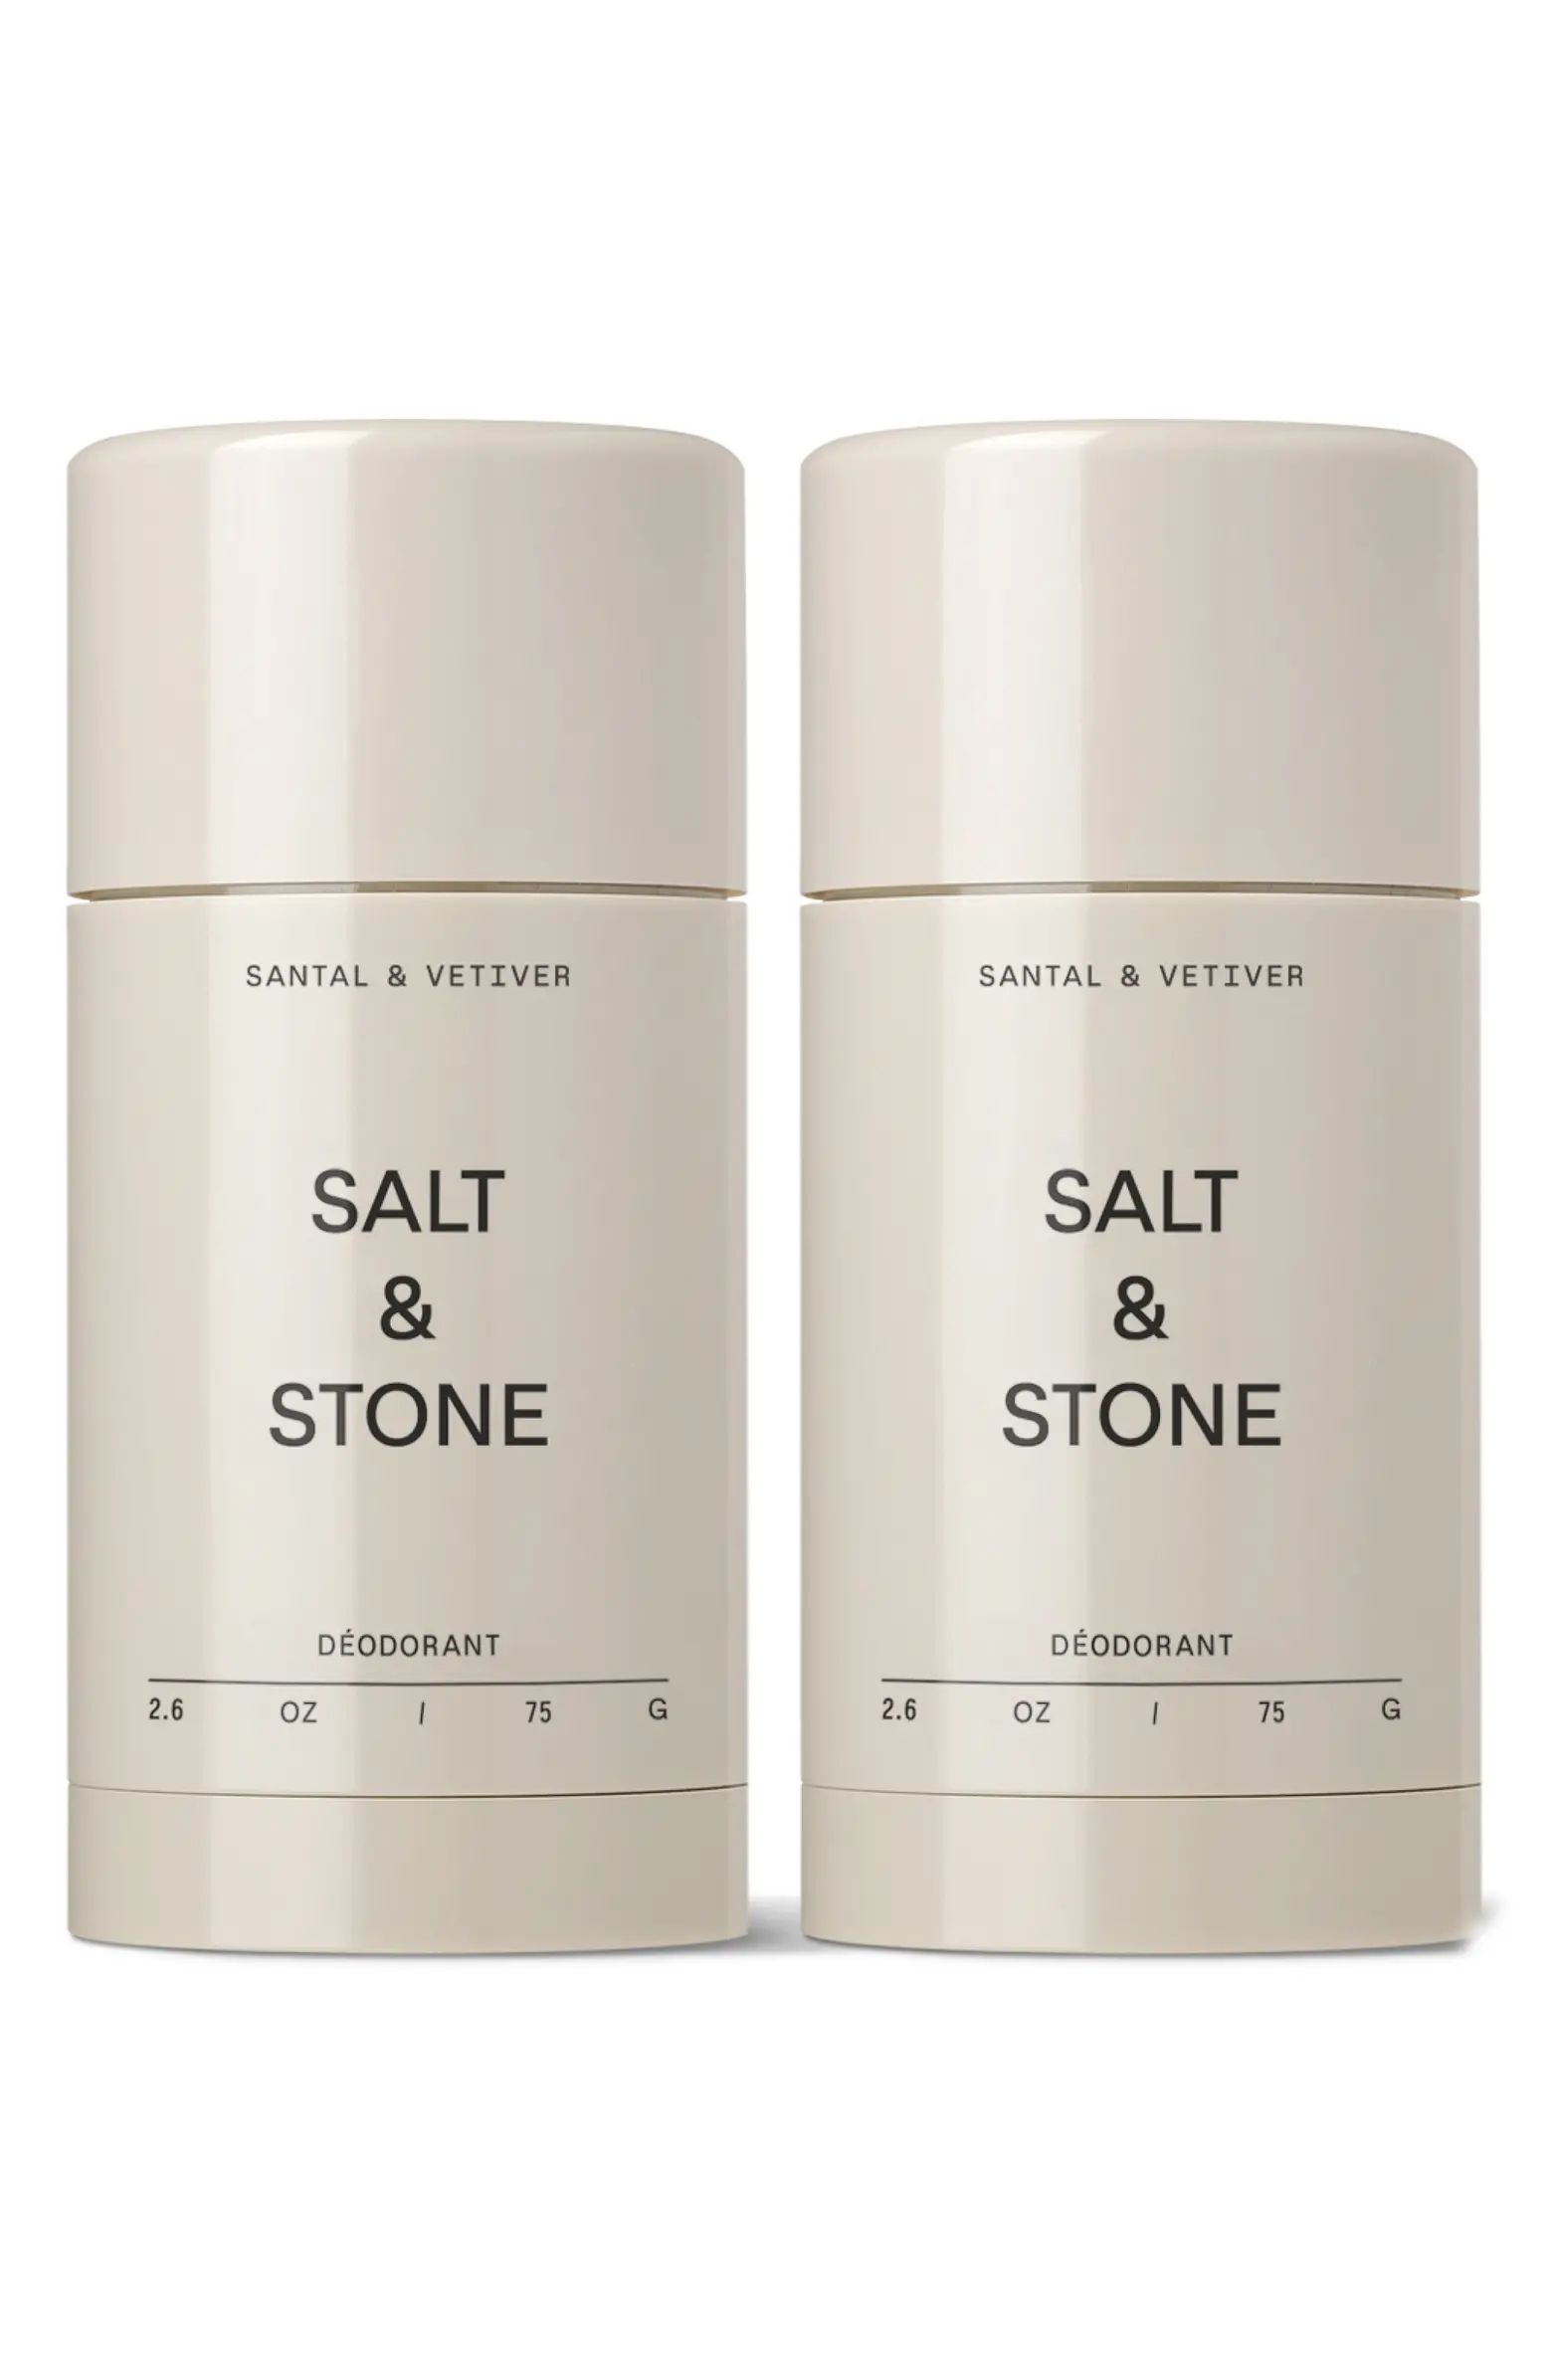 SALT & STONE Santal & Vetiver Deodorant Duo $40 Value | Nordstrom | Nordstrom